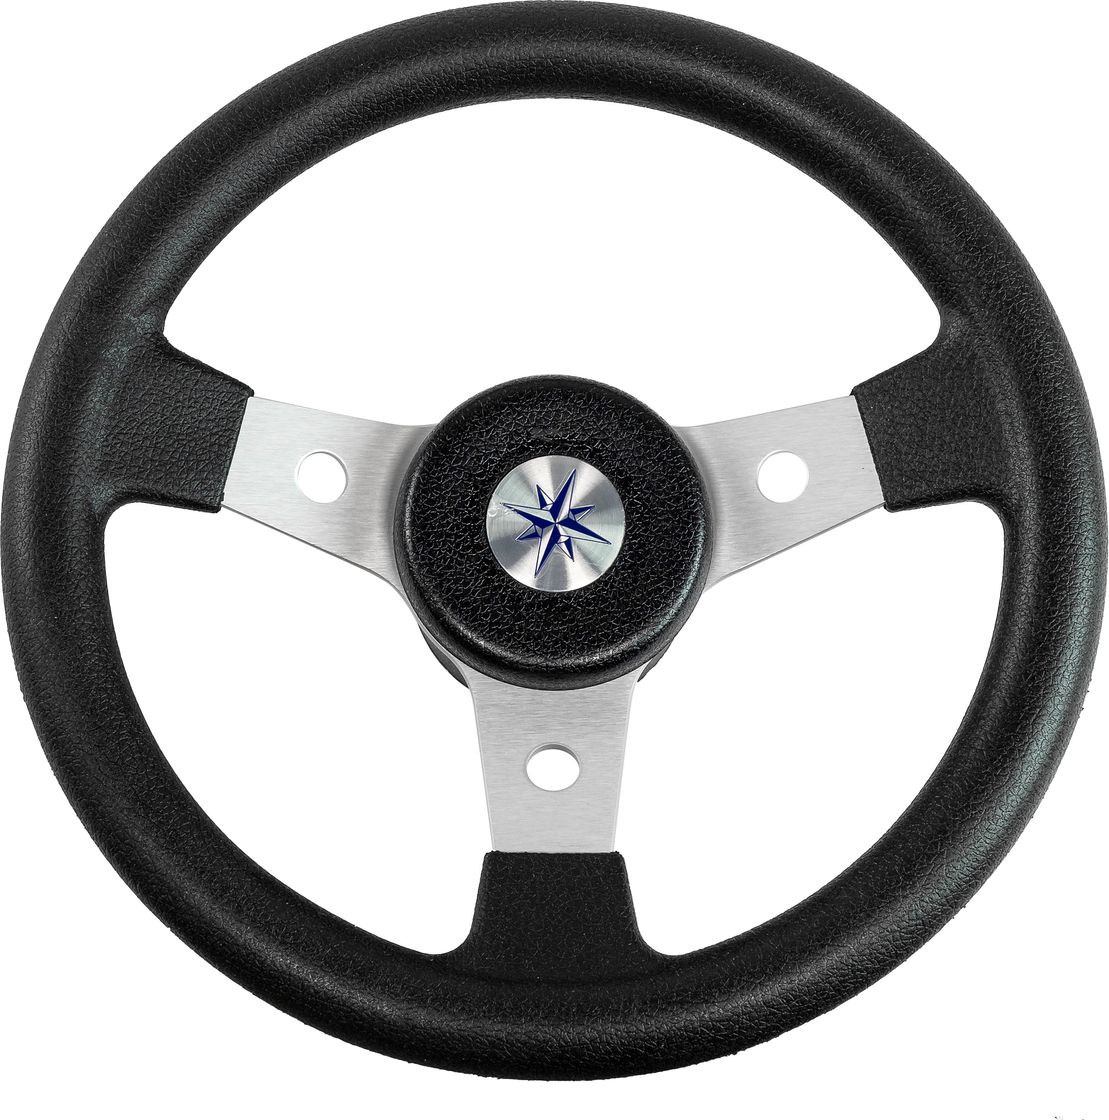 Рулевое колесо DELFINO обод черный,спицы серебряные д. 310 мм VN70103-01 рулевое колесо e chance обод и спицы черные д 330 мм d33 ec